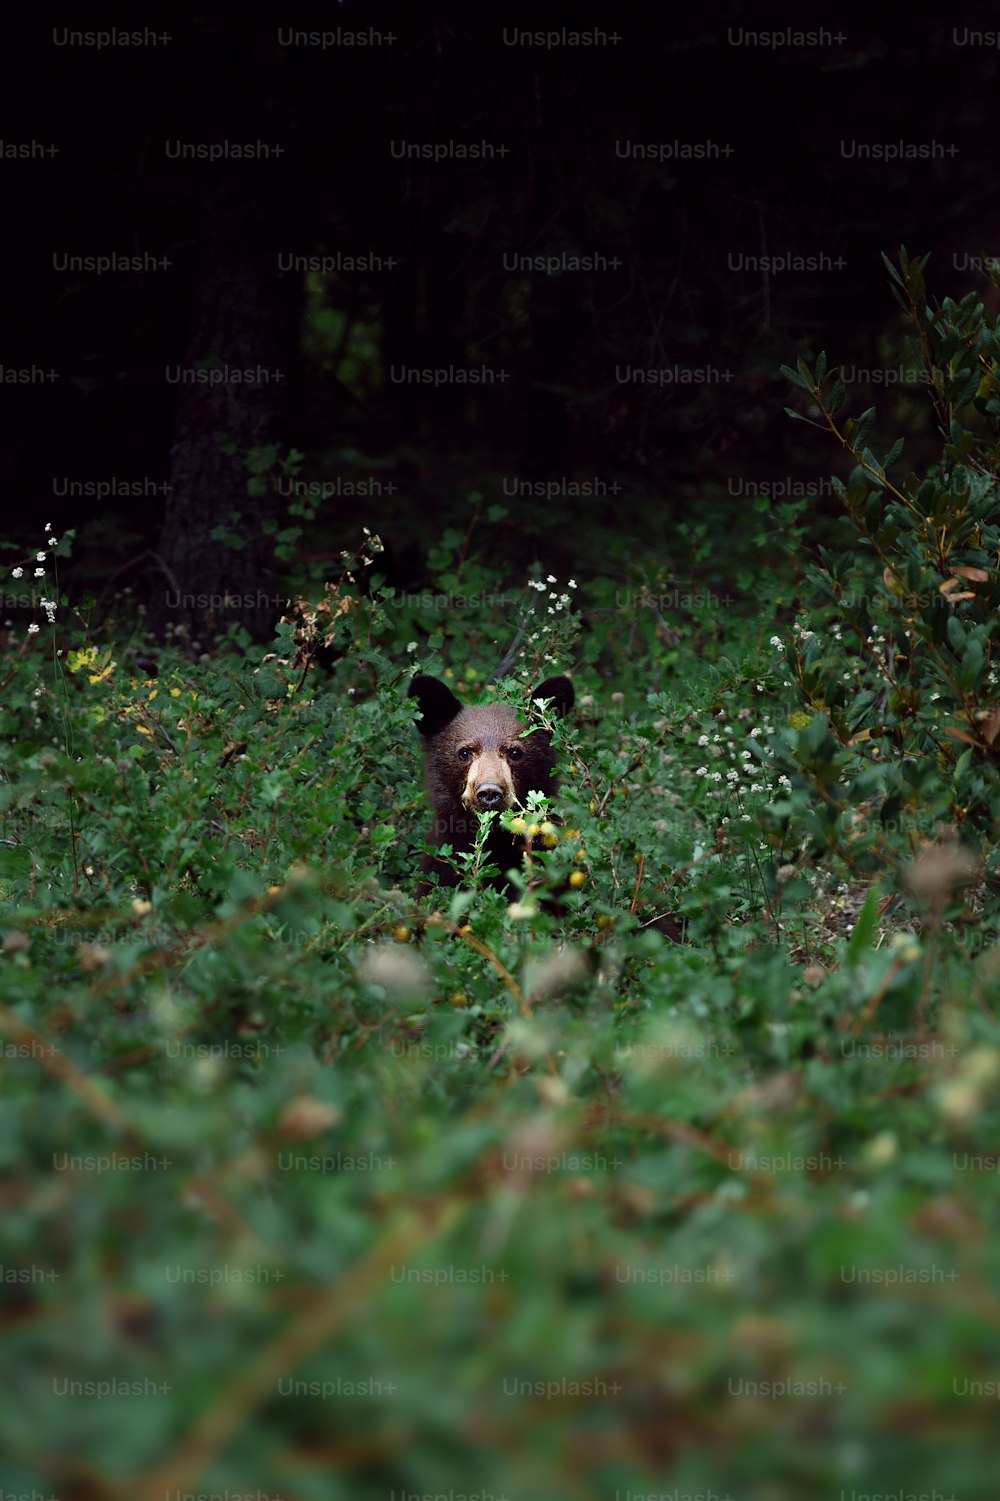 Un ours brun marchant dans une forêt verdoyante